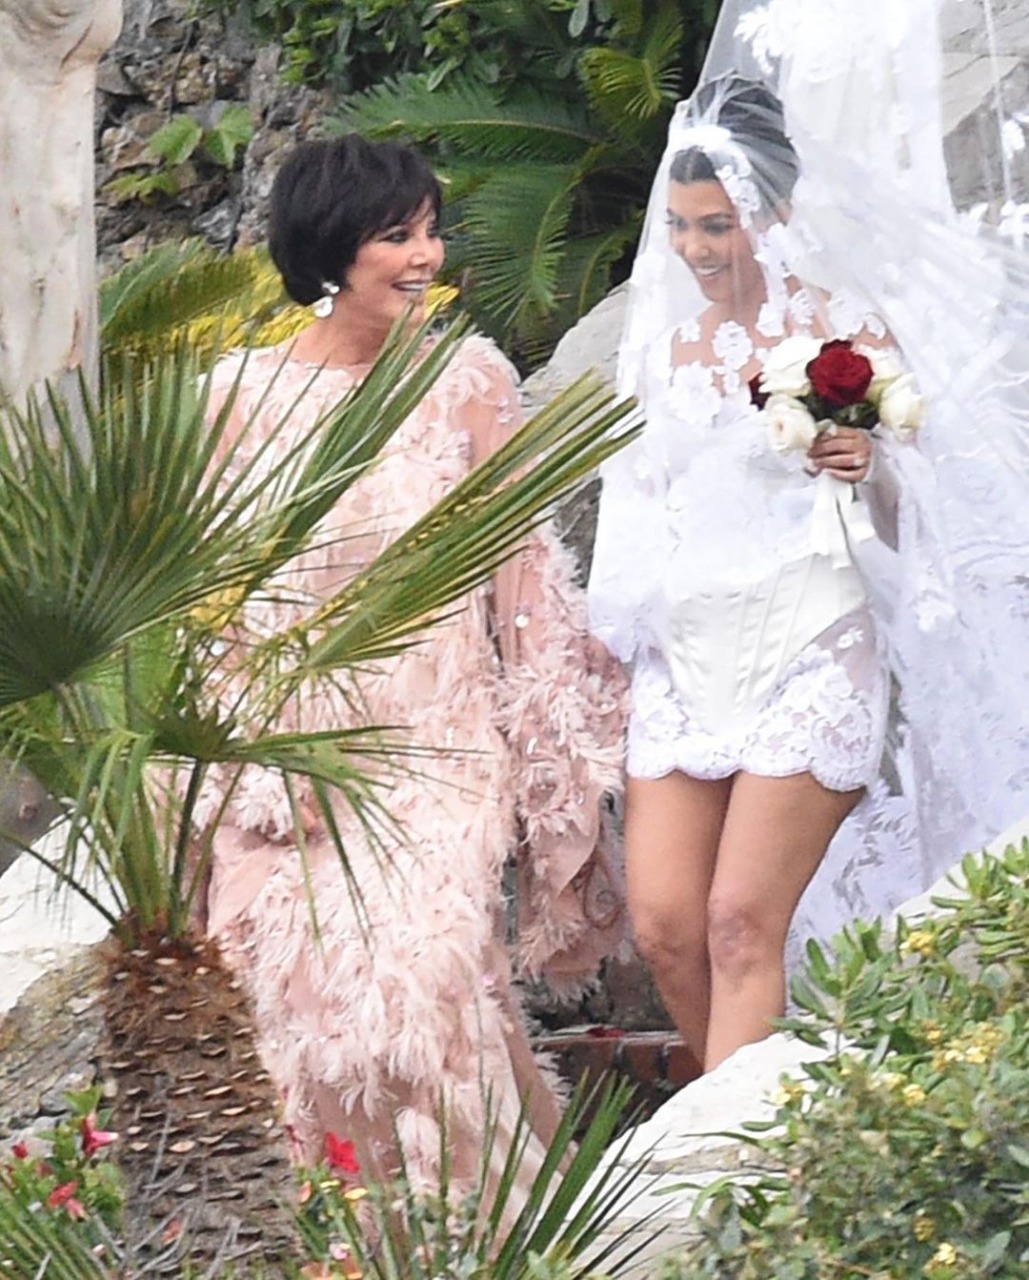 La lujosa boda de Kourtney Kardashian y Travis Barker